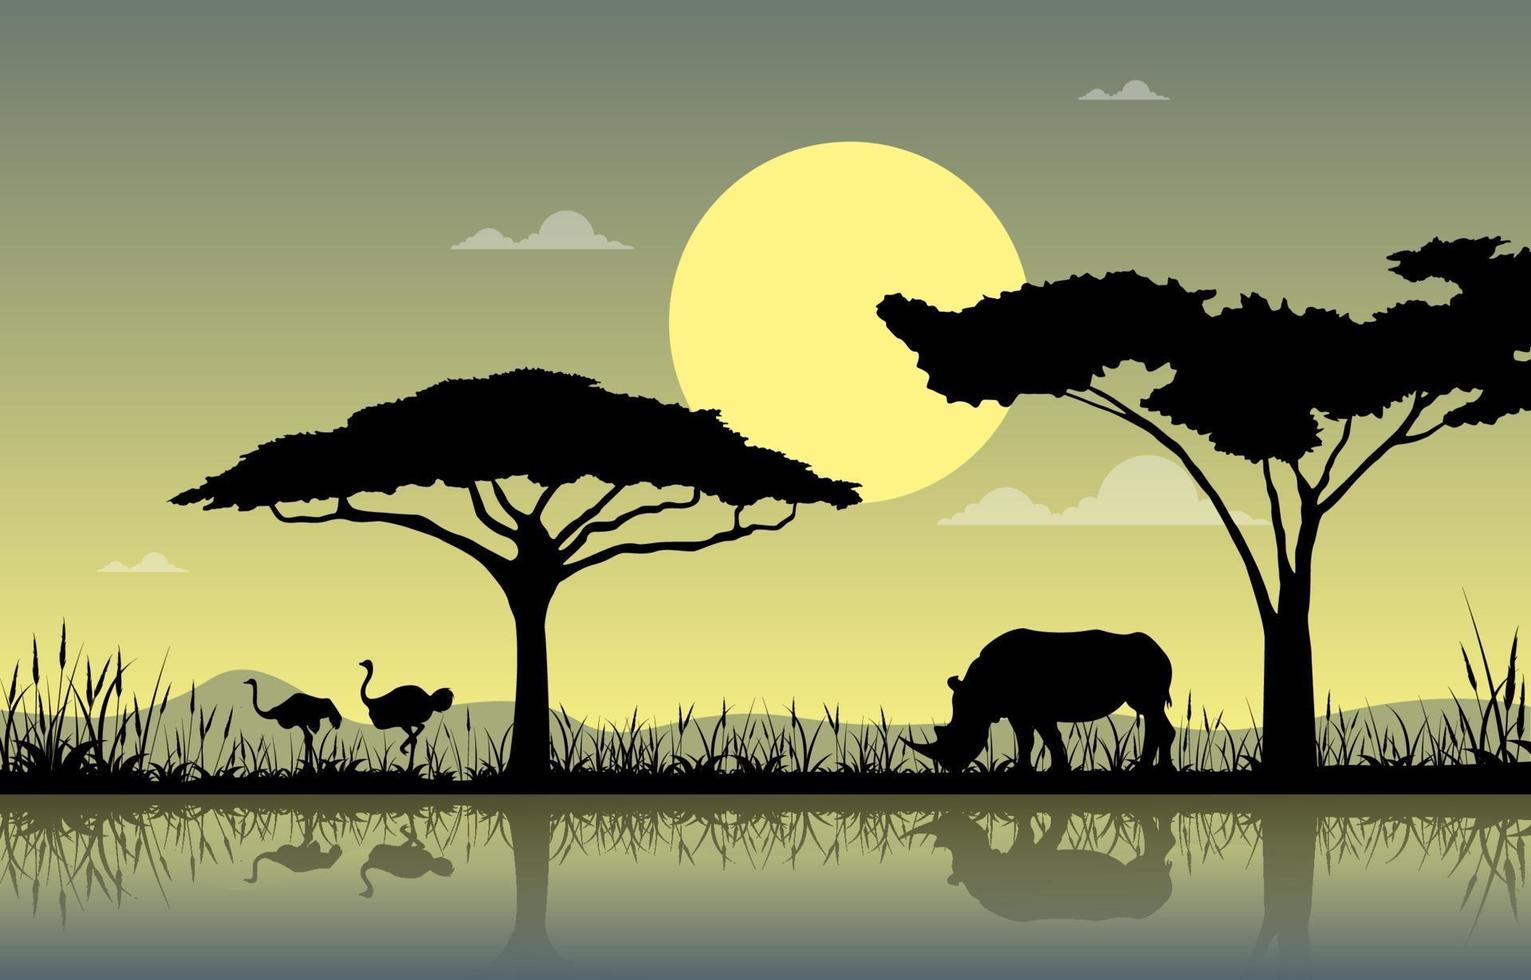 struzzi e rinoceronti all'oasi nell'illustrazione del paesaggio della savana africana vettore